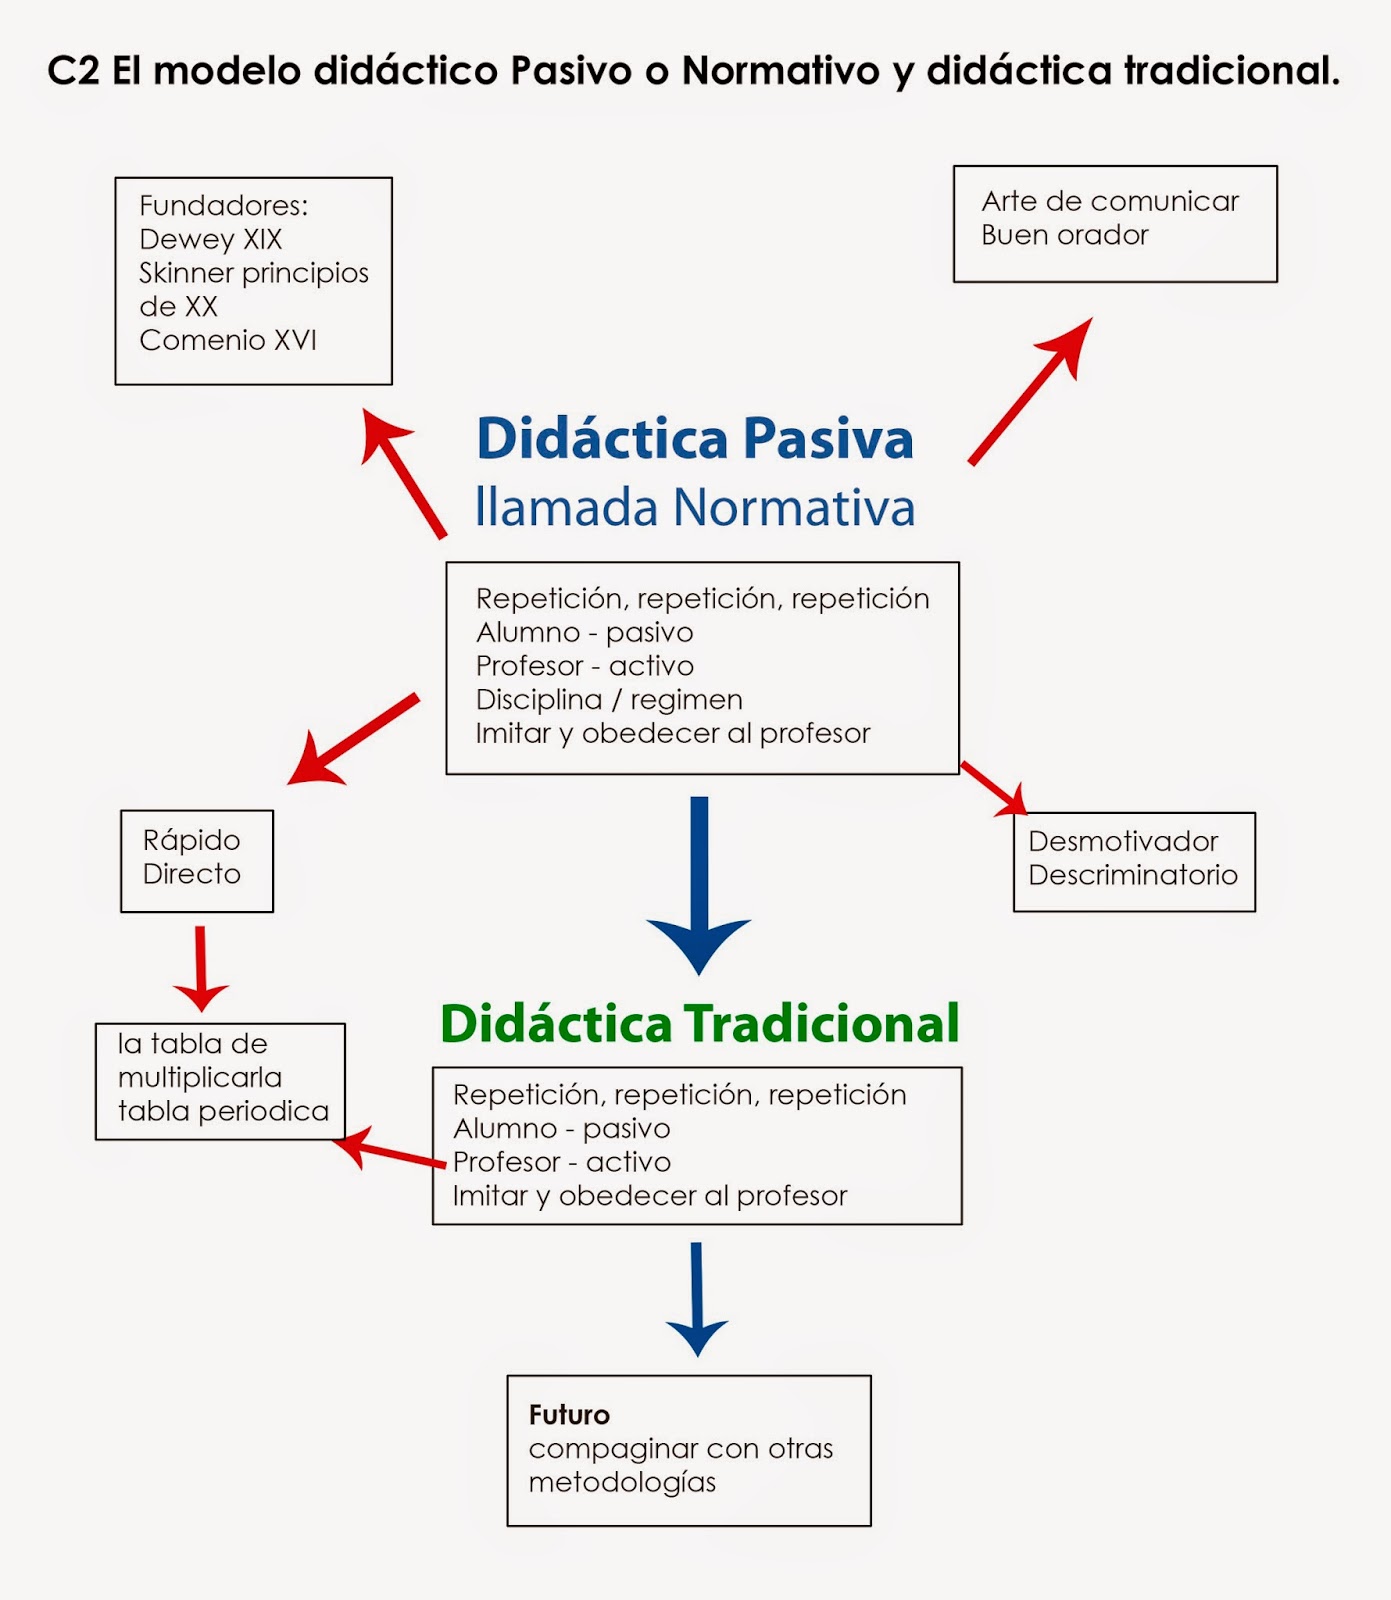 VisualEduca: El modelo didáctico Pasivo o Normativo y didáctica tradicional.